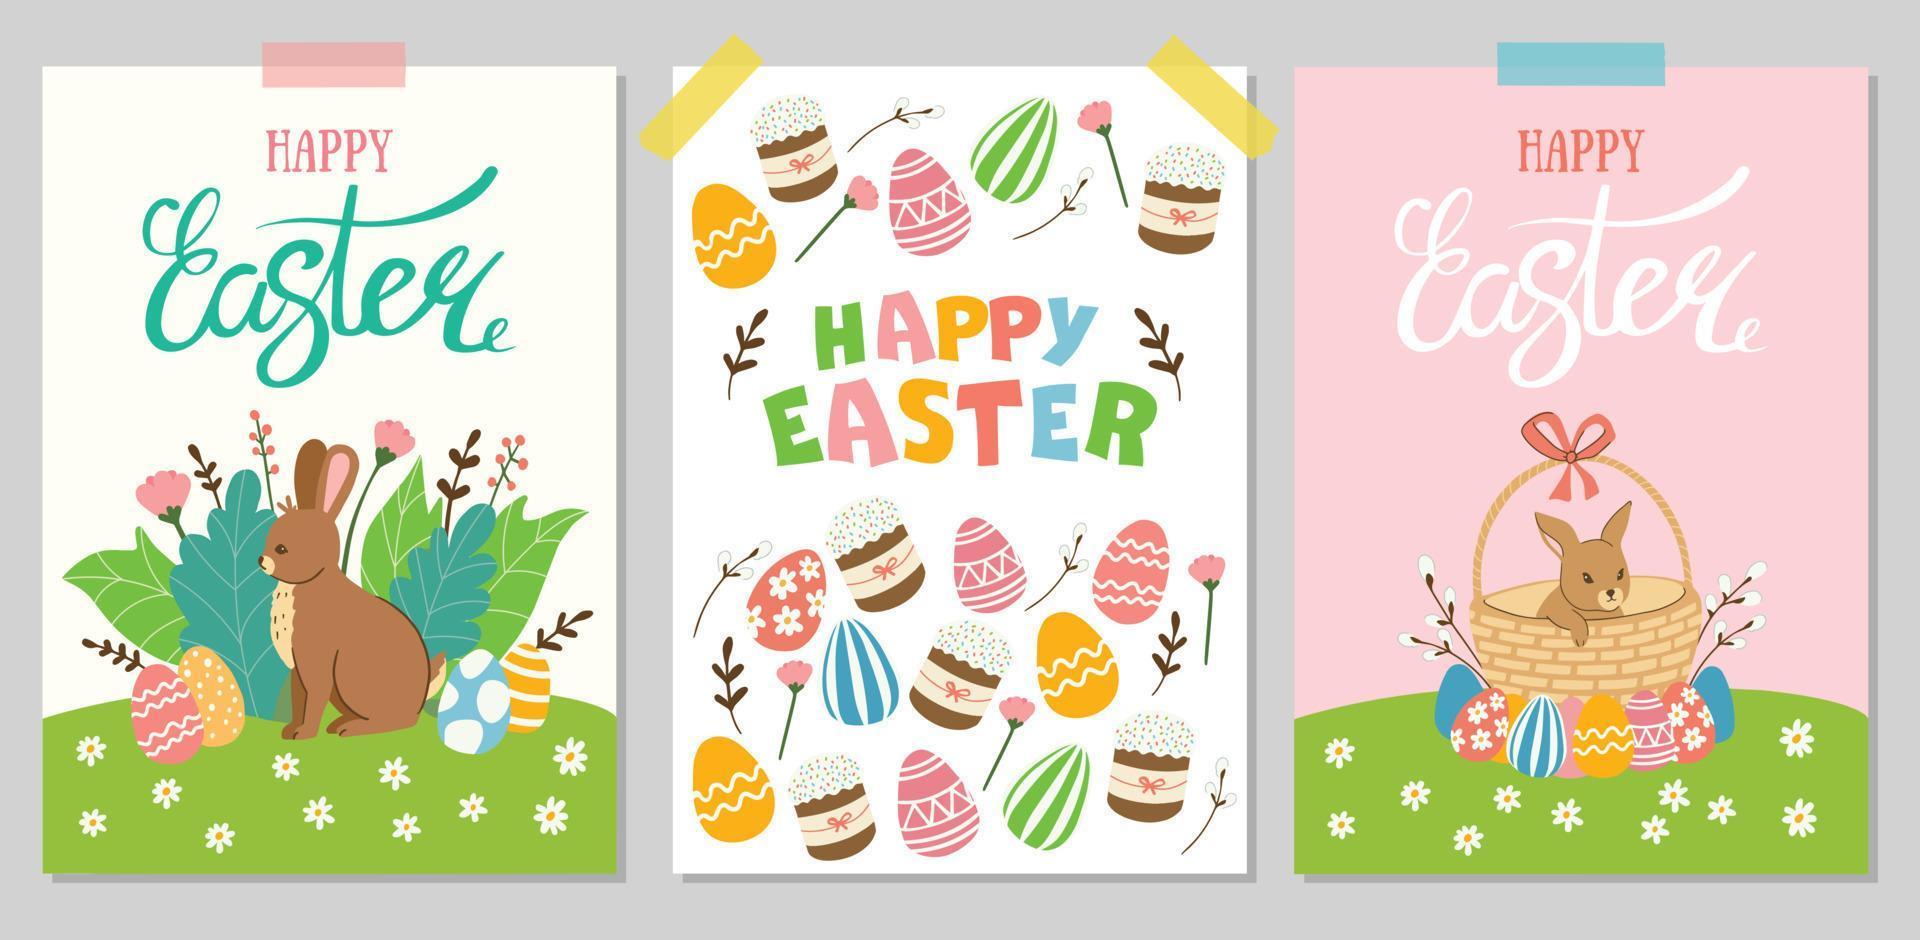 Buona Pasqua. una serie di simpatiche illustrazioni vettoriali con elementi pasquali per poster, cartoline, inviti o banner.